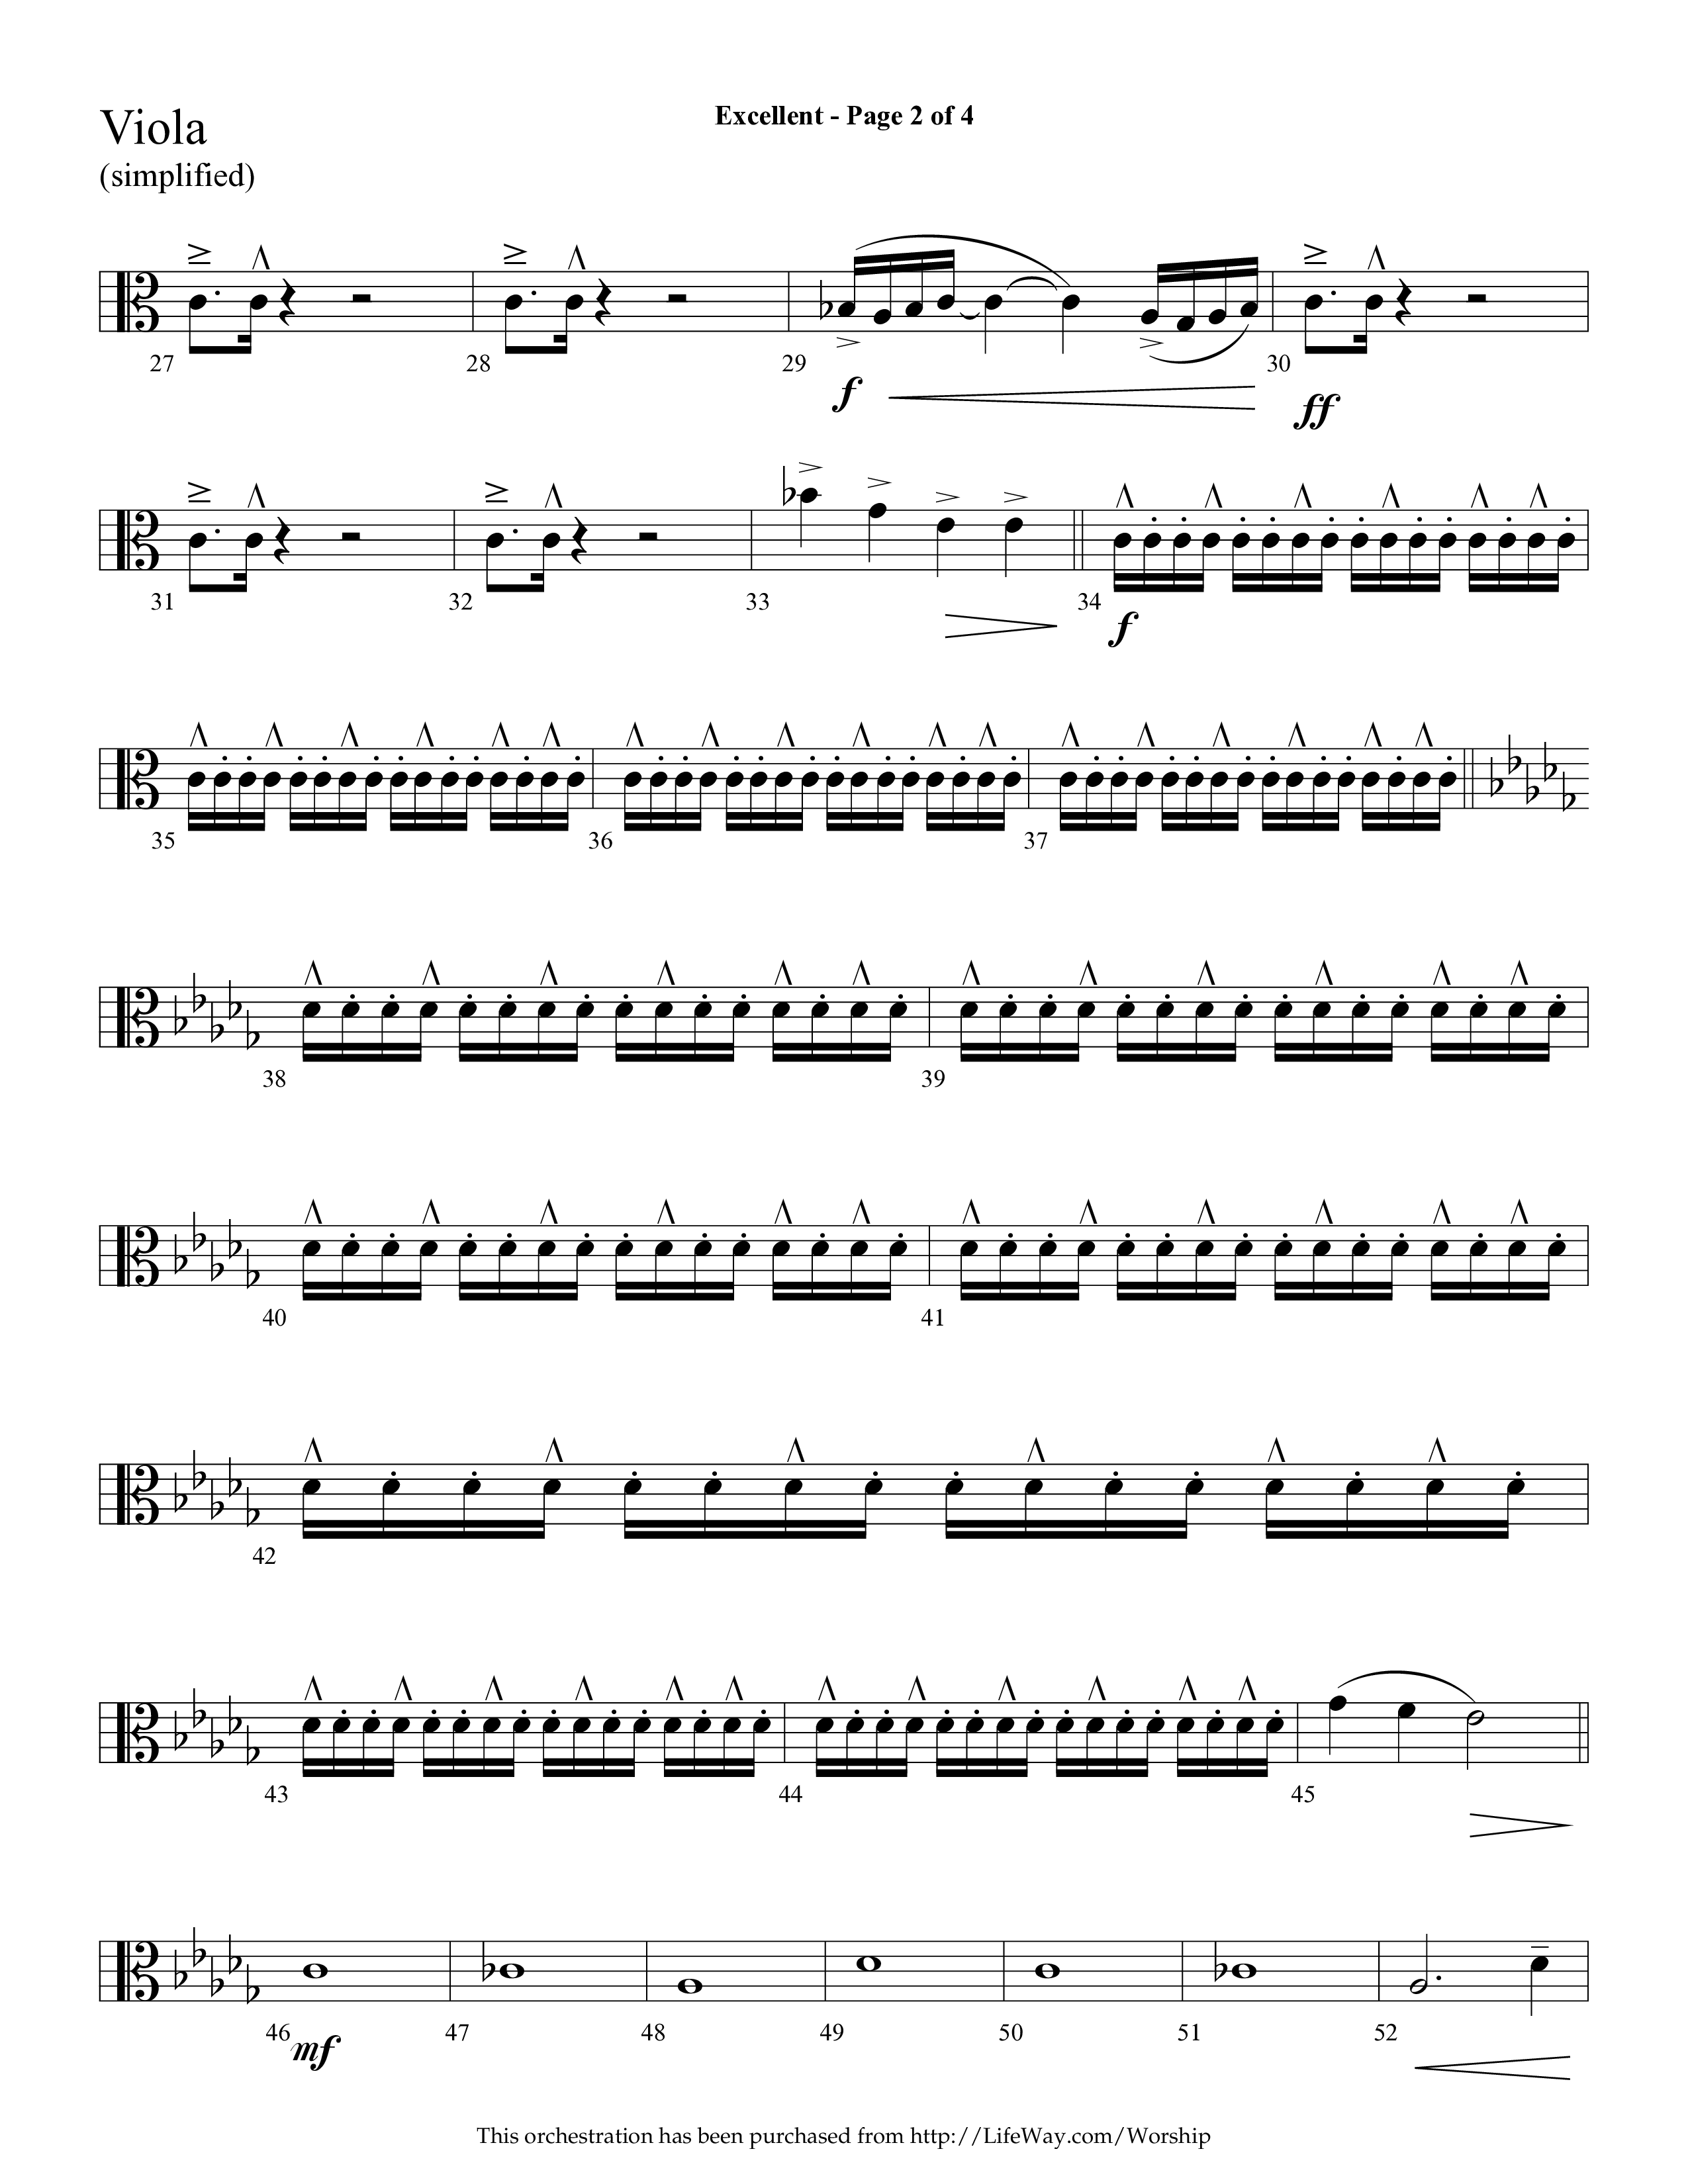 Excellent (Choral Anthem SATB) Viola (Lifeway Choral / Arr. Cliff Duren)